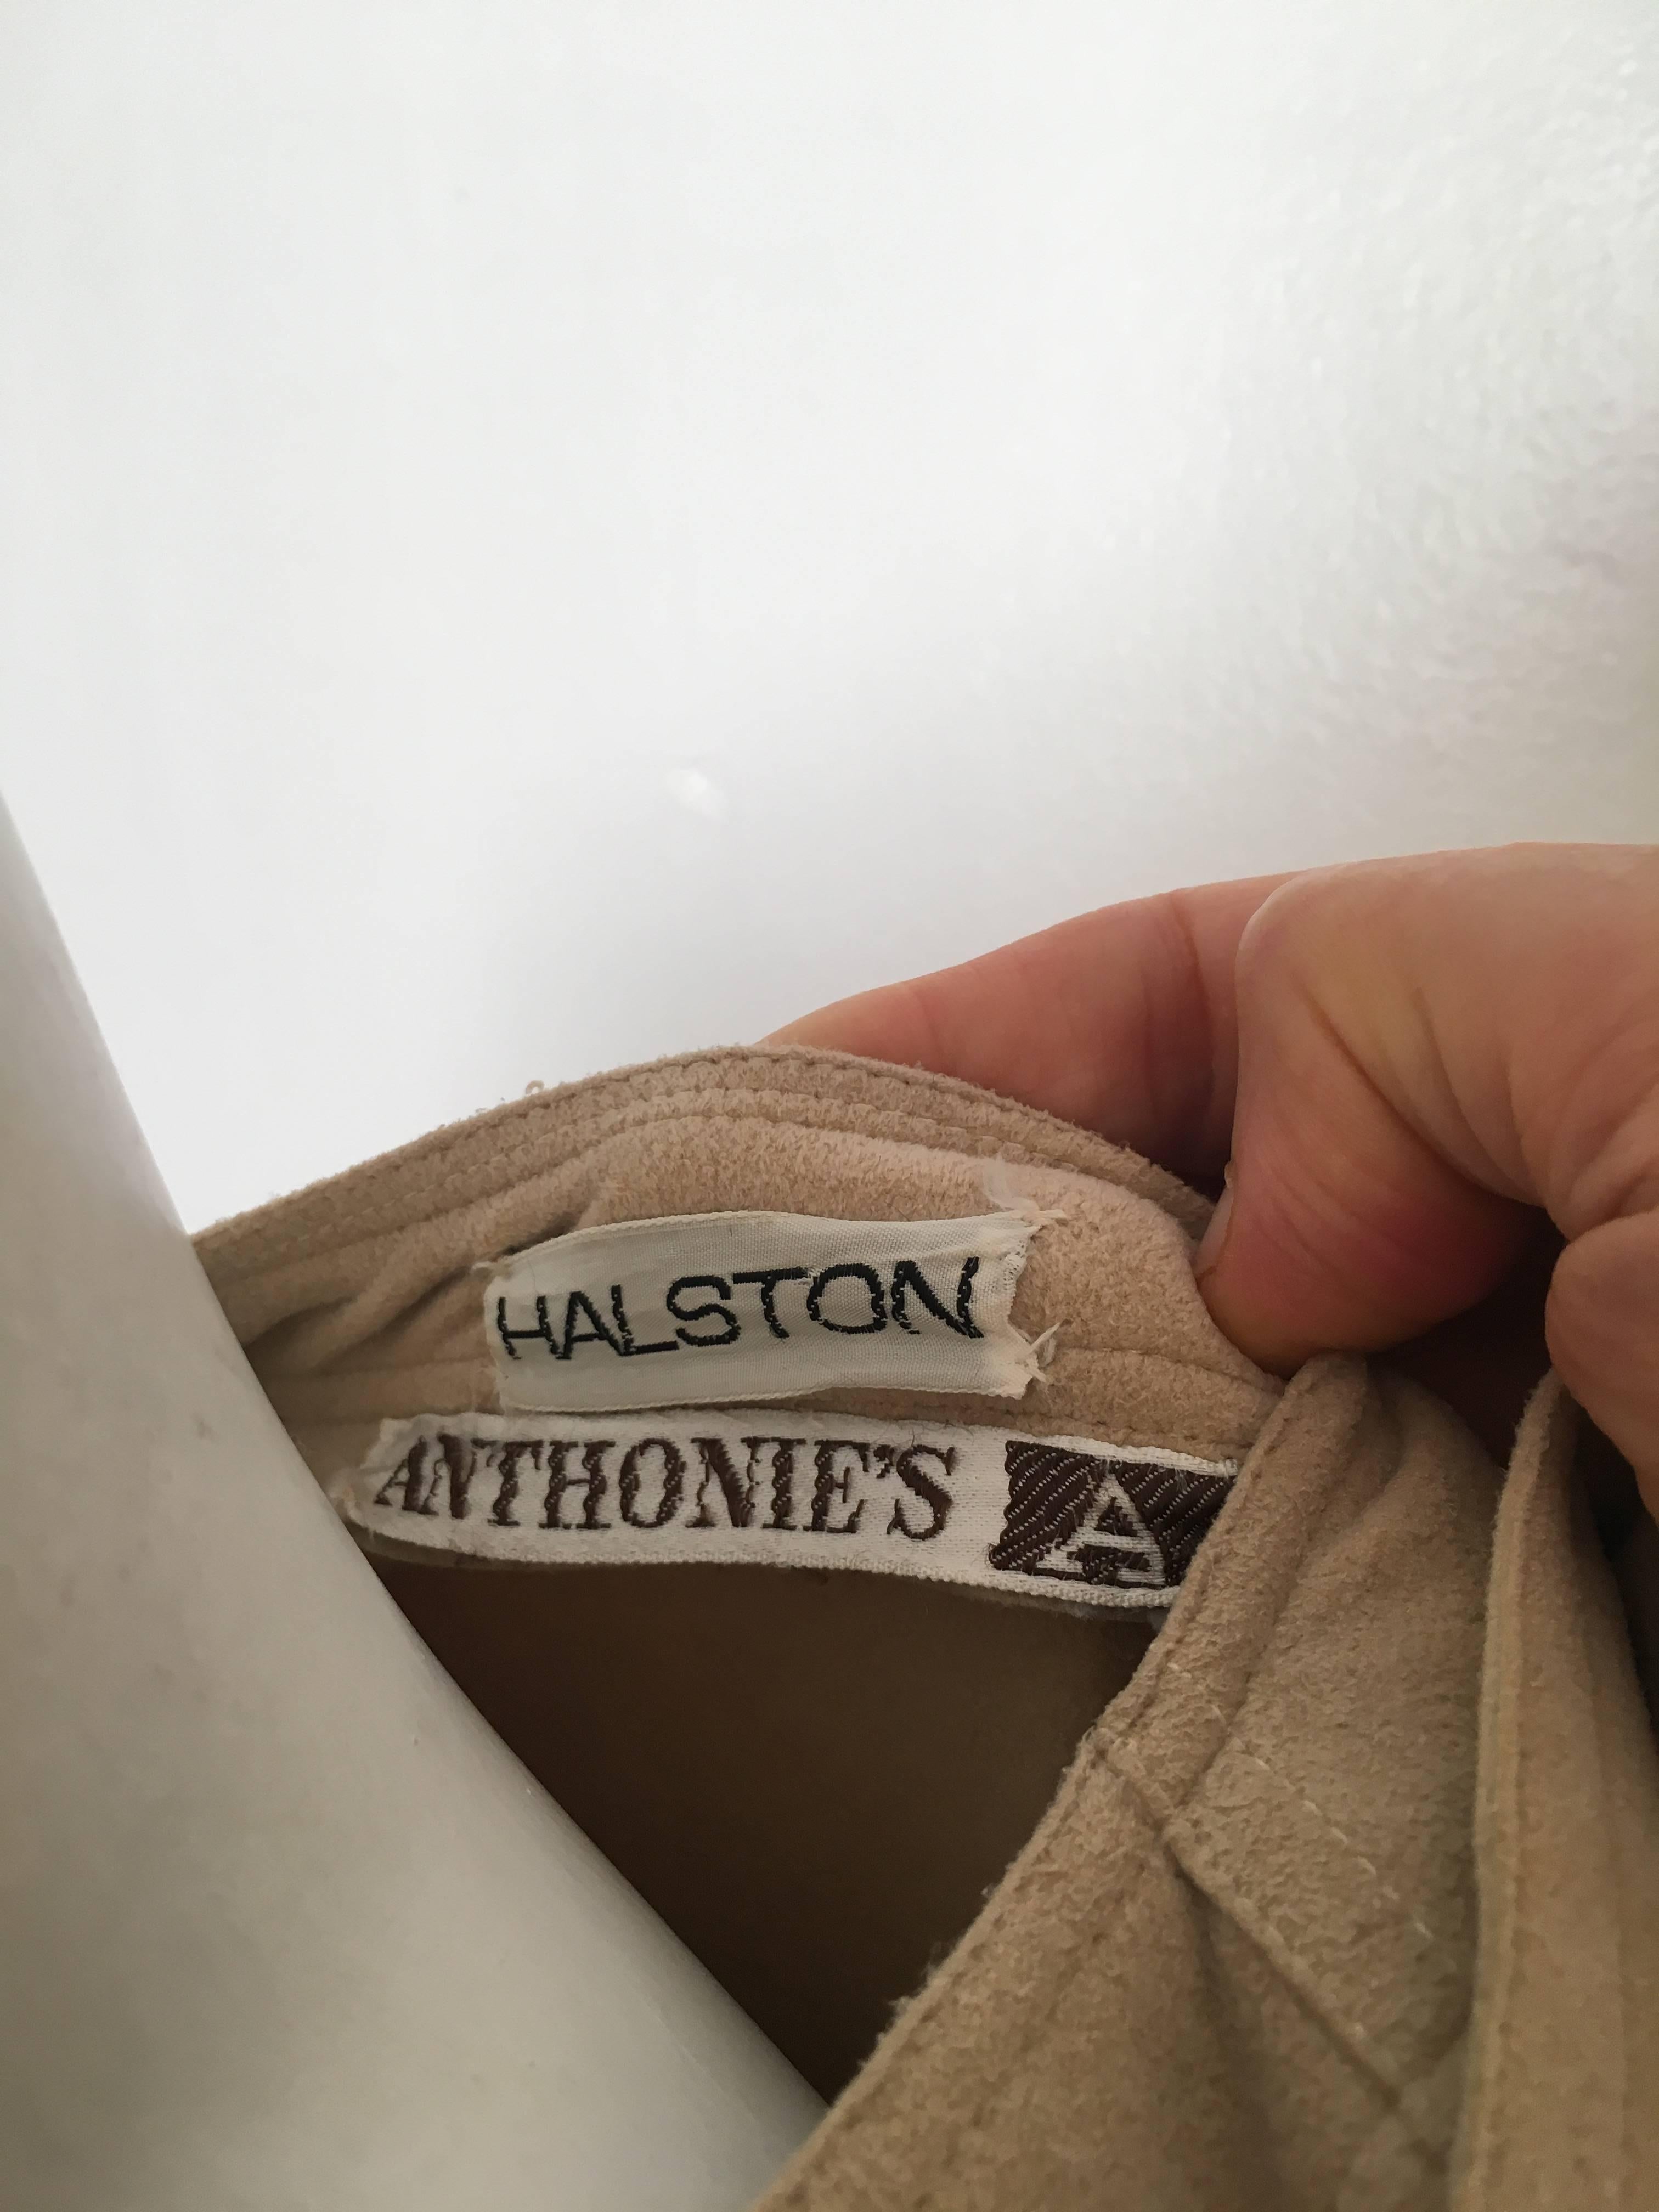 Halston Ultrasuede Belted Dress Size Large. 3